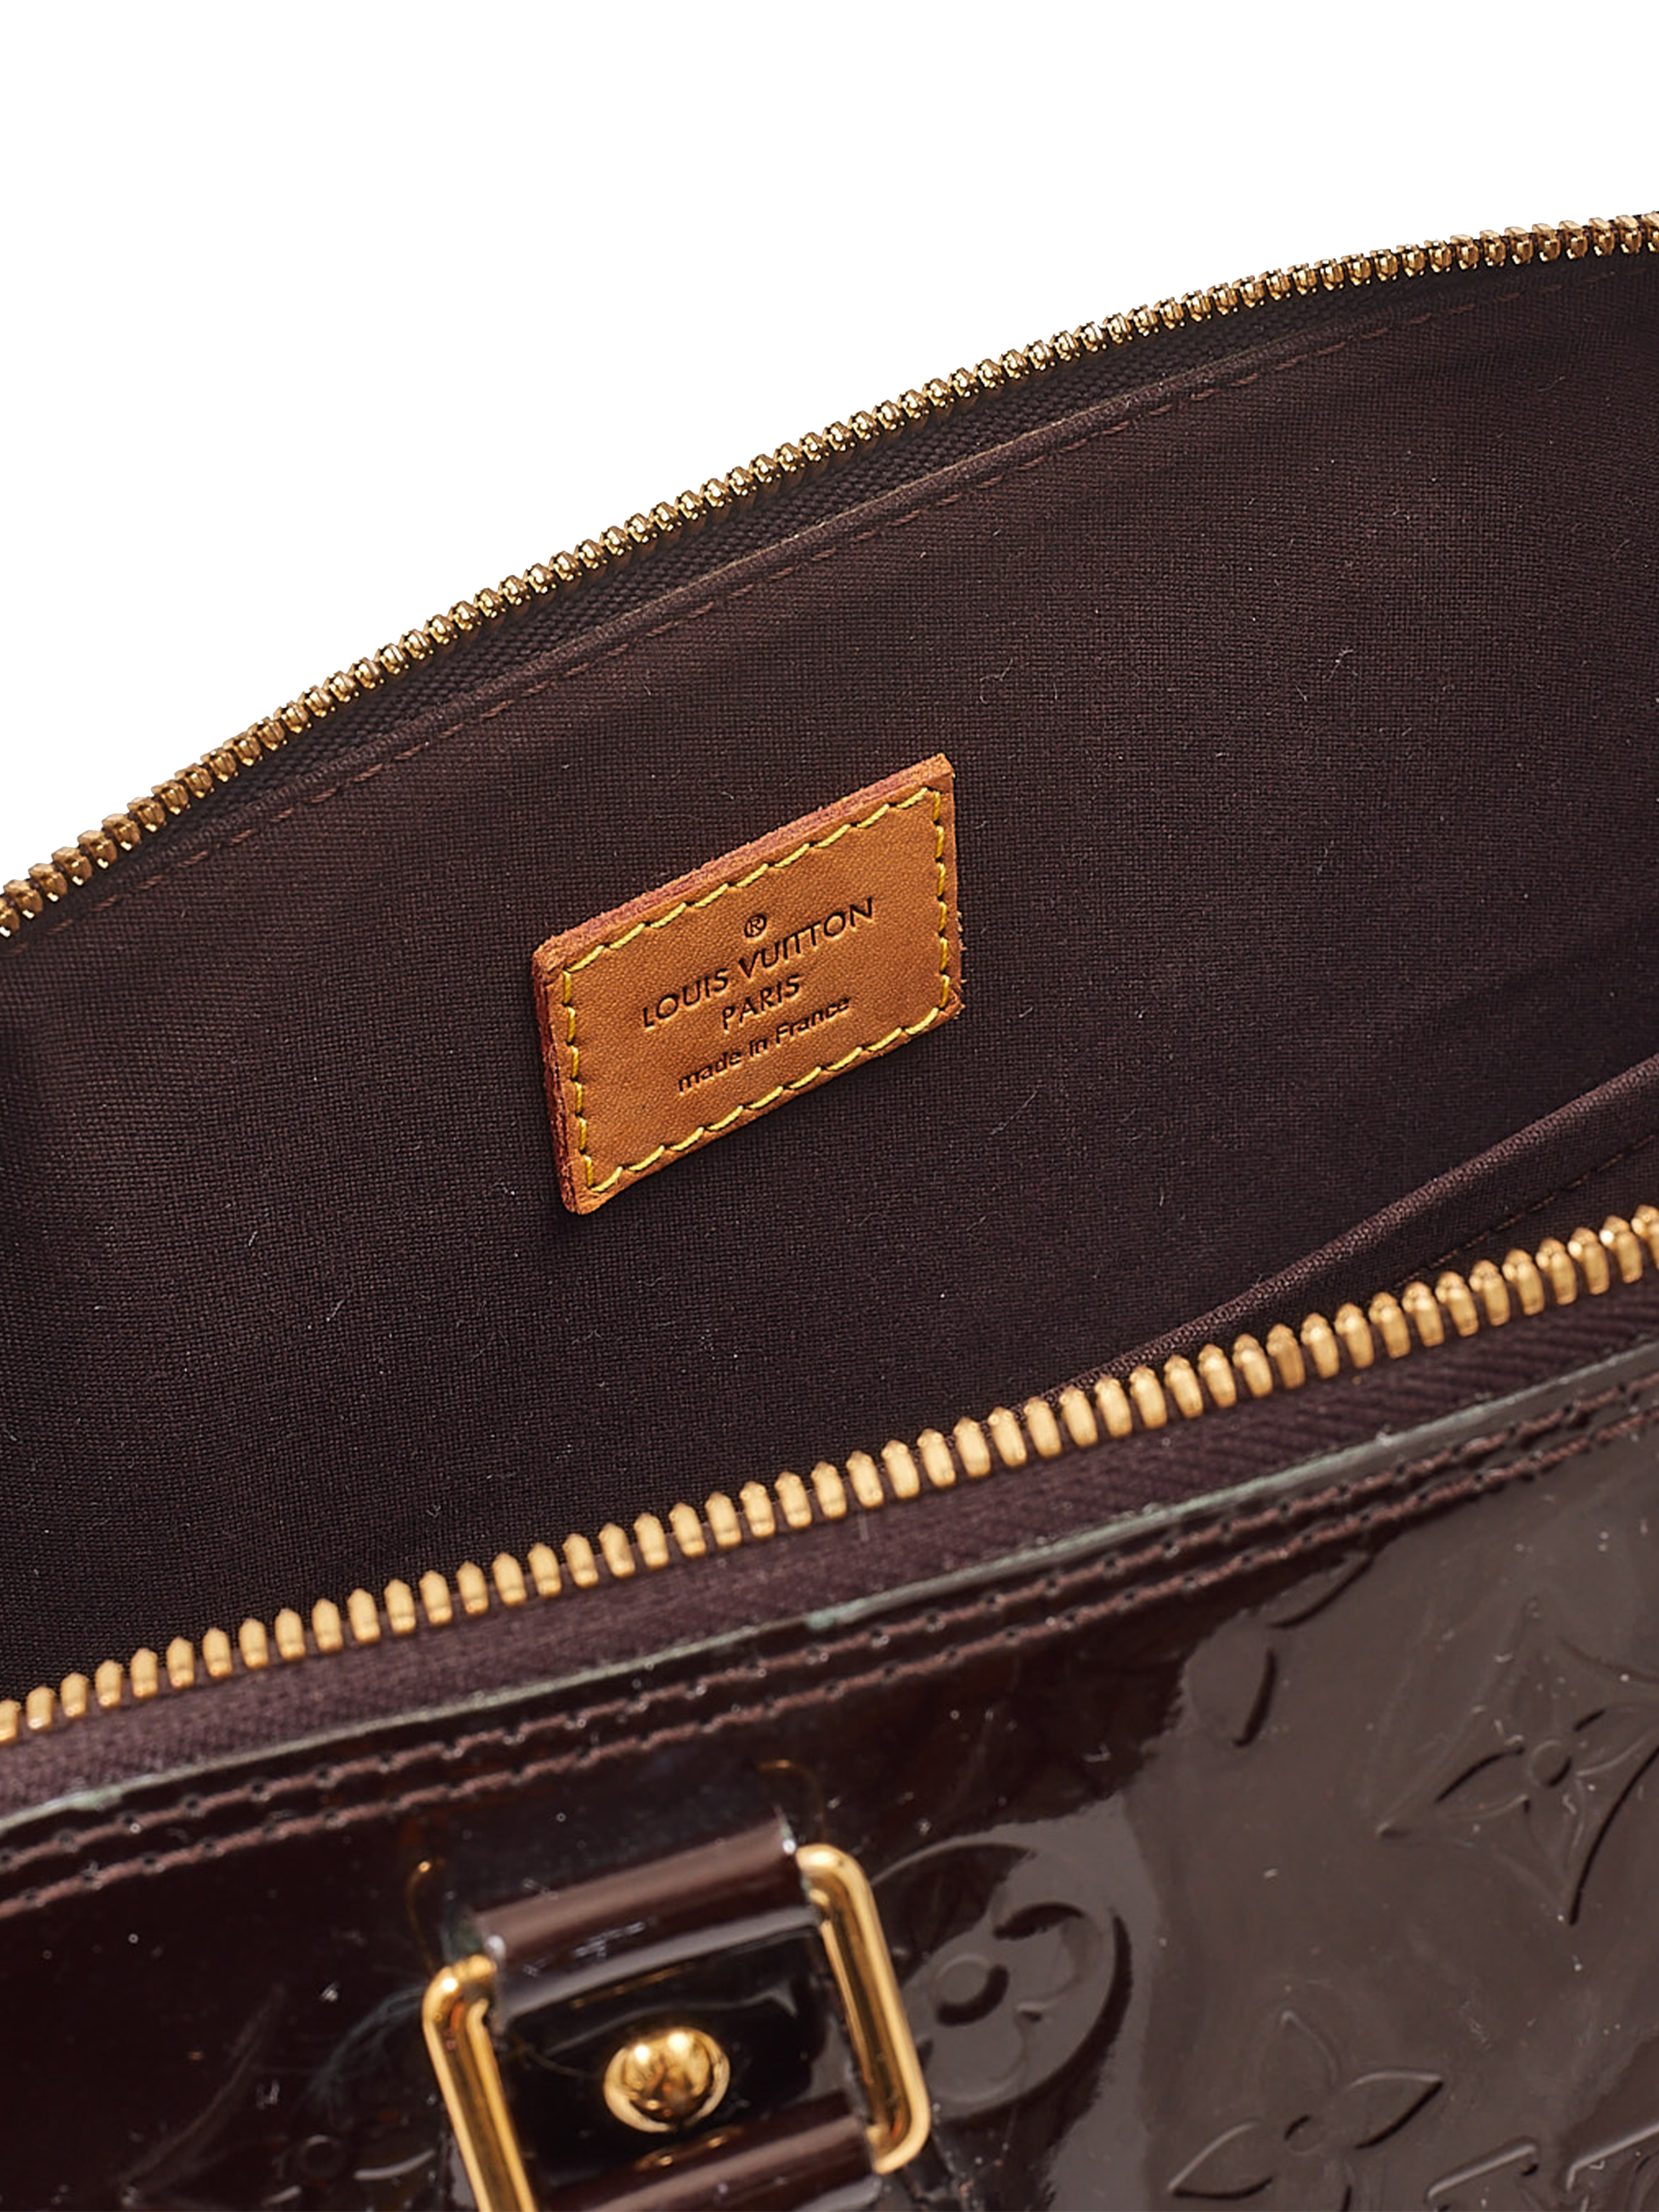 Sold at Auction: LOUIS VUITTON 2011 Sac SHERWOOD PM Cuir vernis rouge  Garniture métal doré Dimensions : 38 x 18 x 15 cm SHERWOOD PM